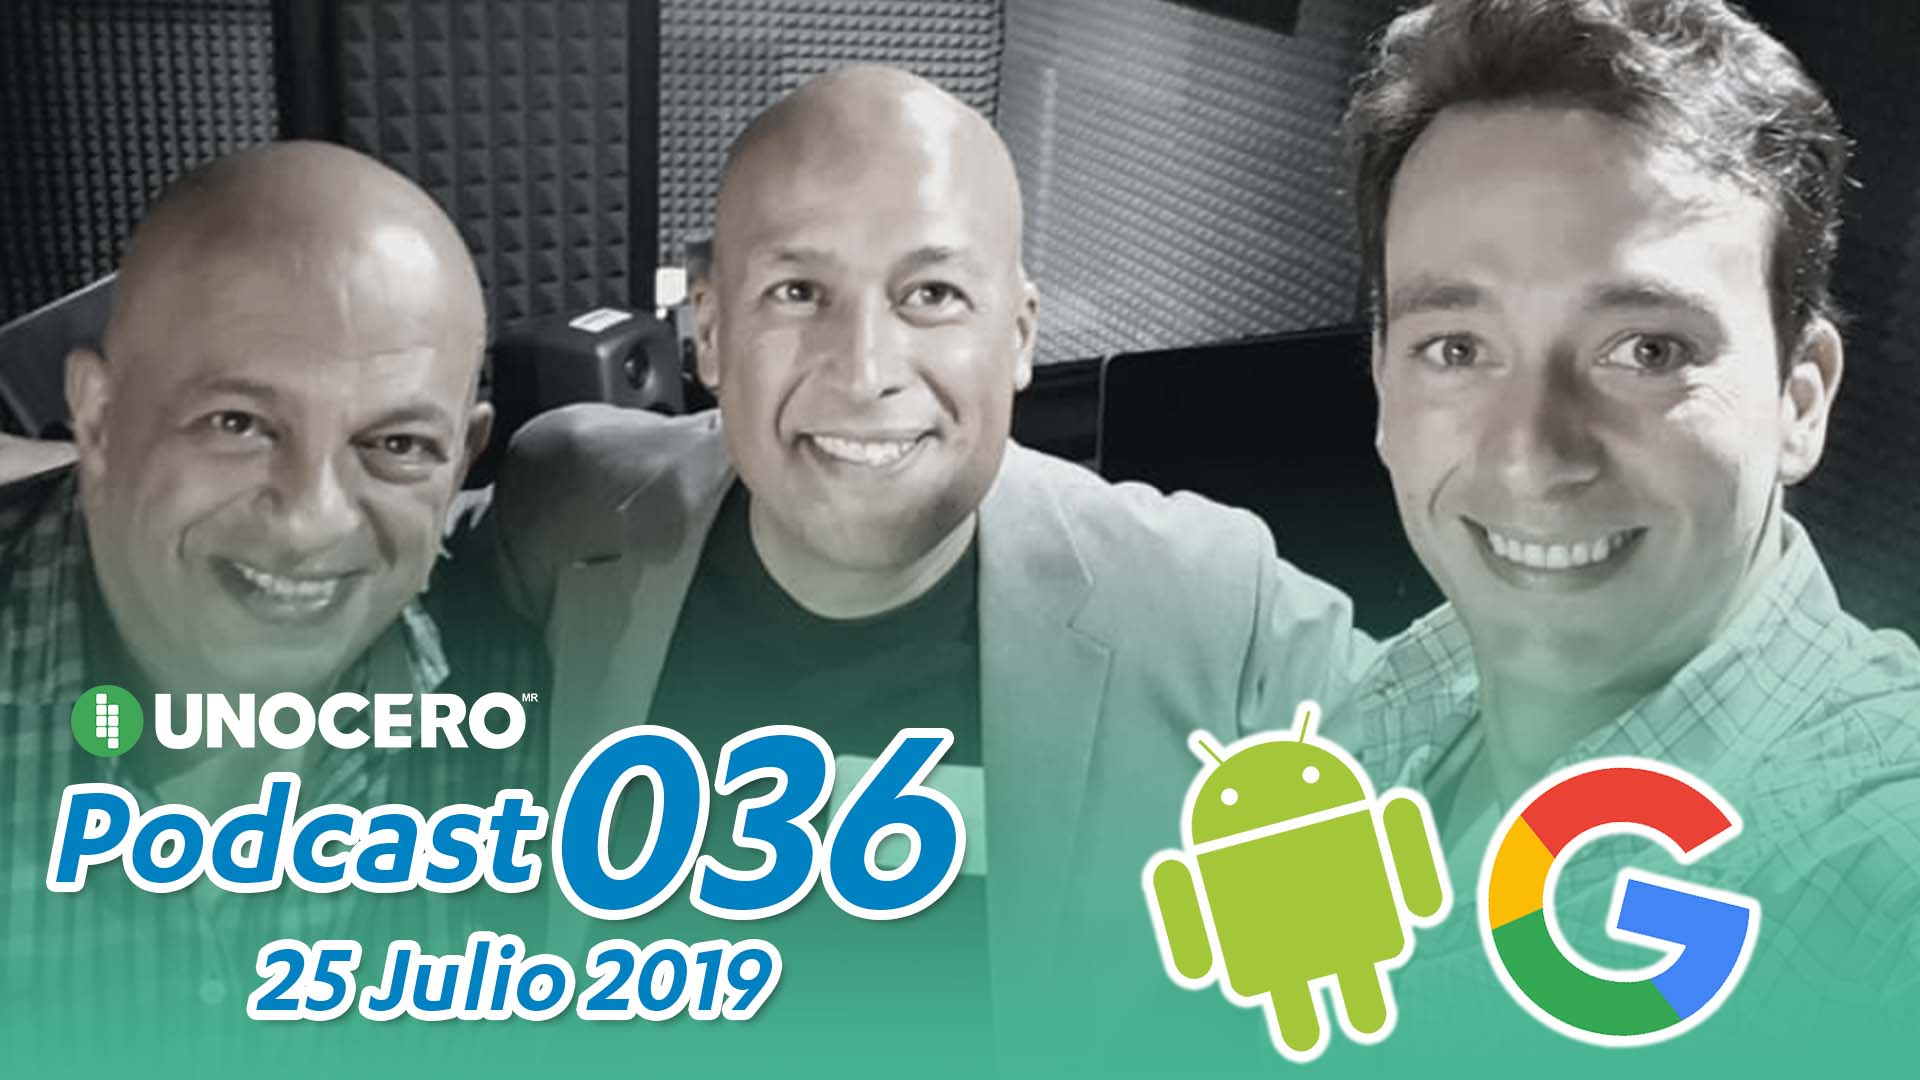 Unocero Podcast 036: Viaje al pasado y Google en México. Noticias en tiempo real